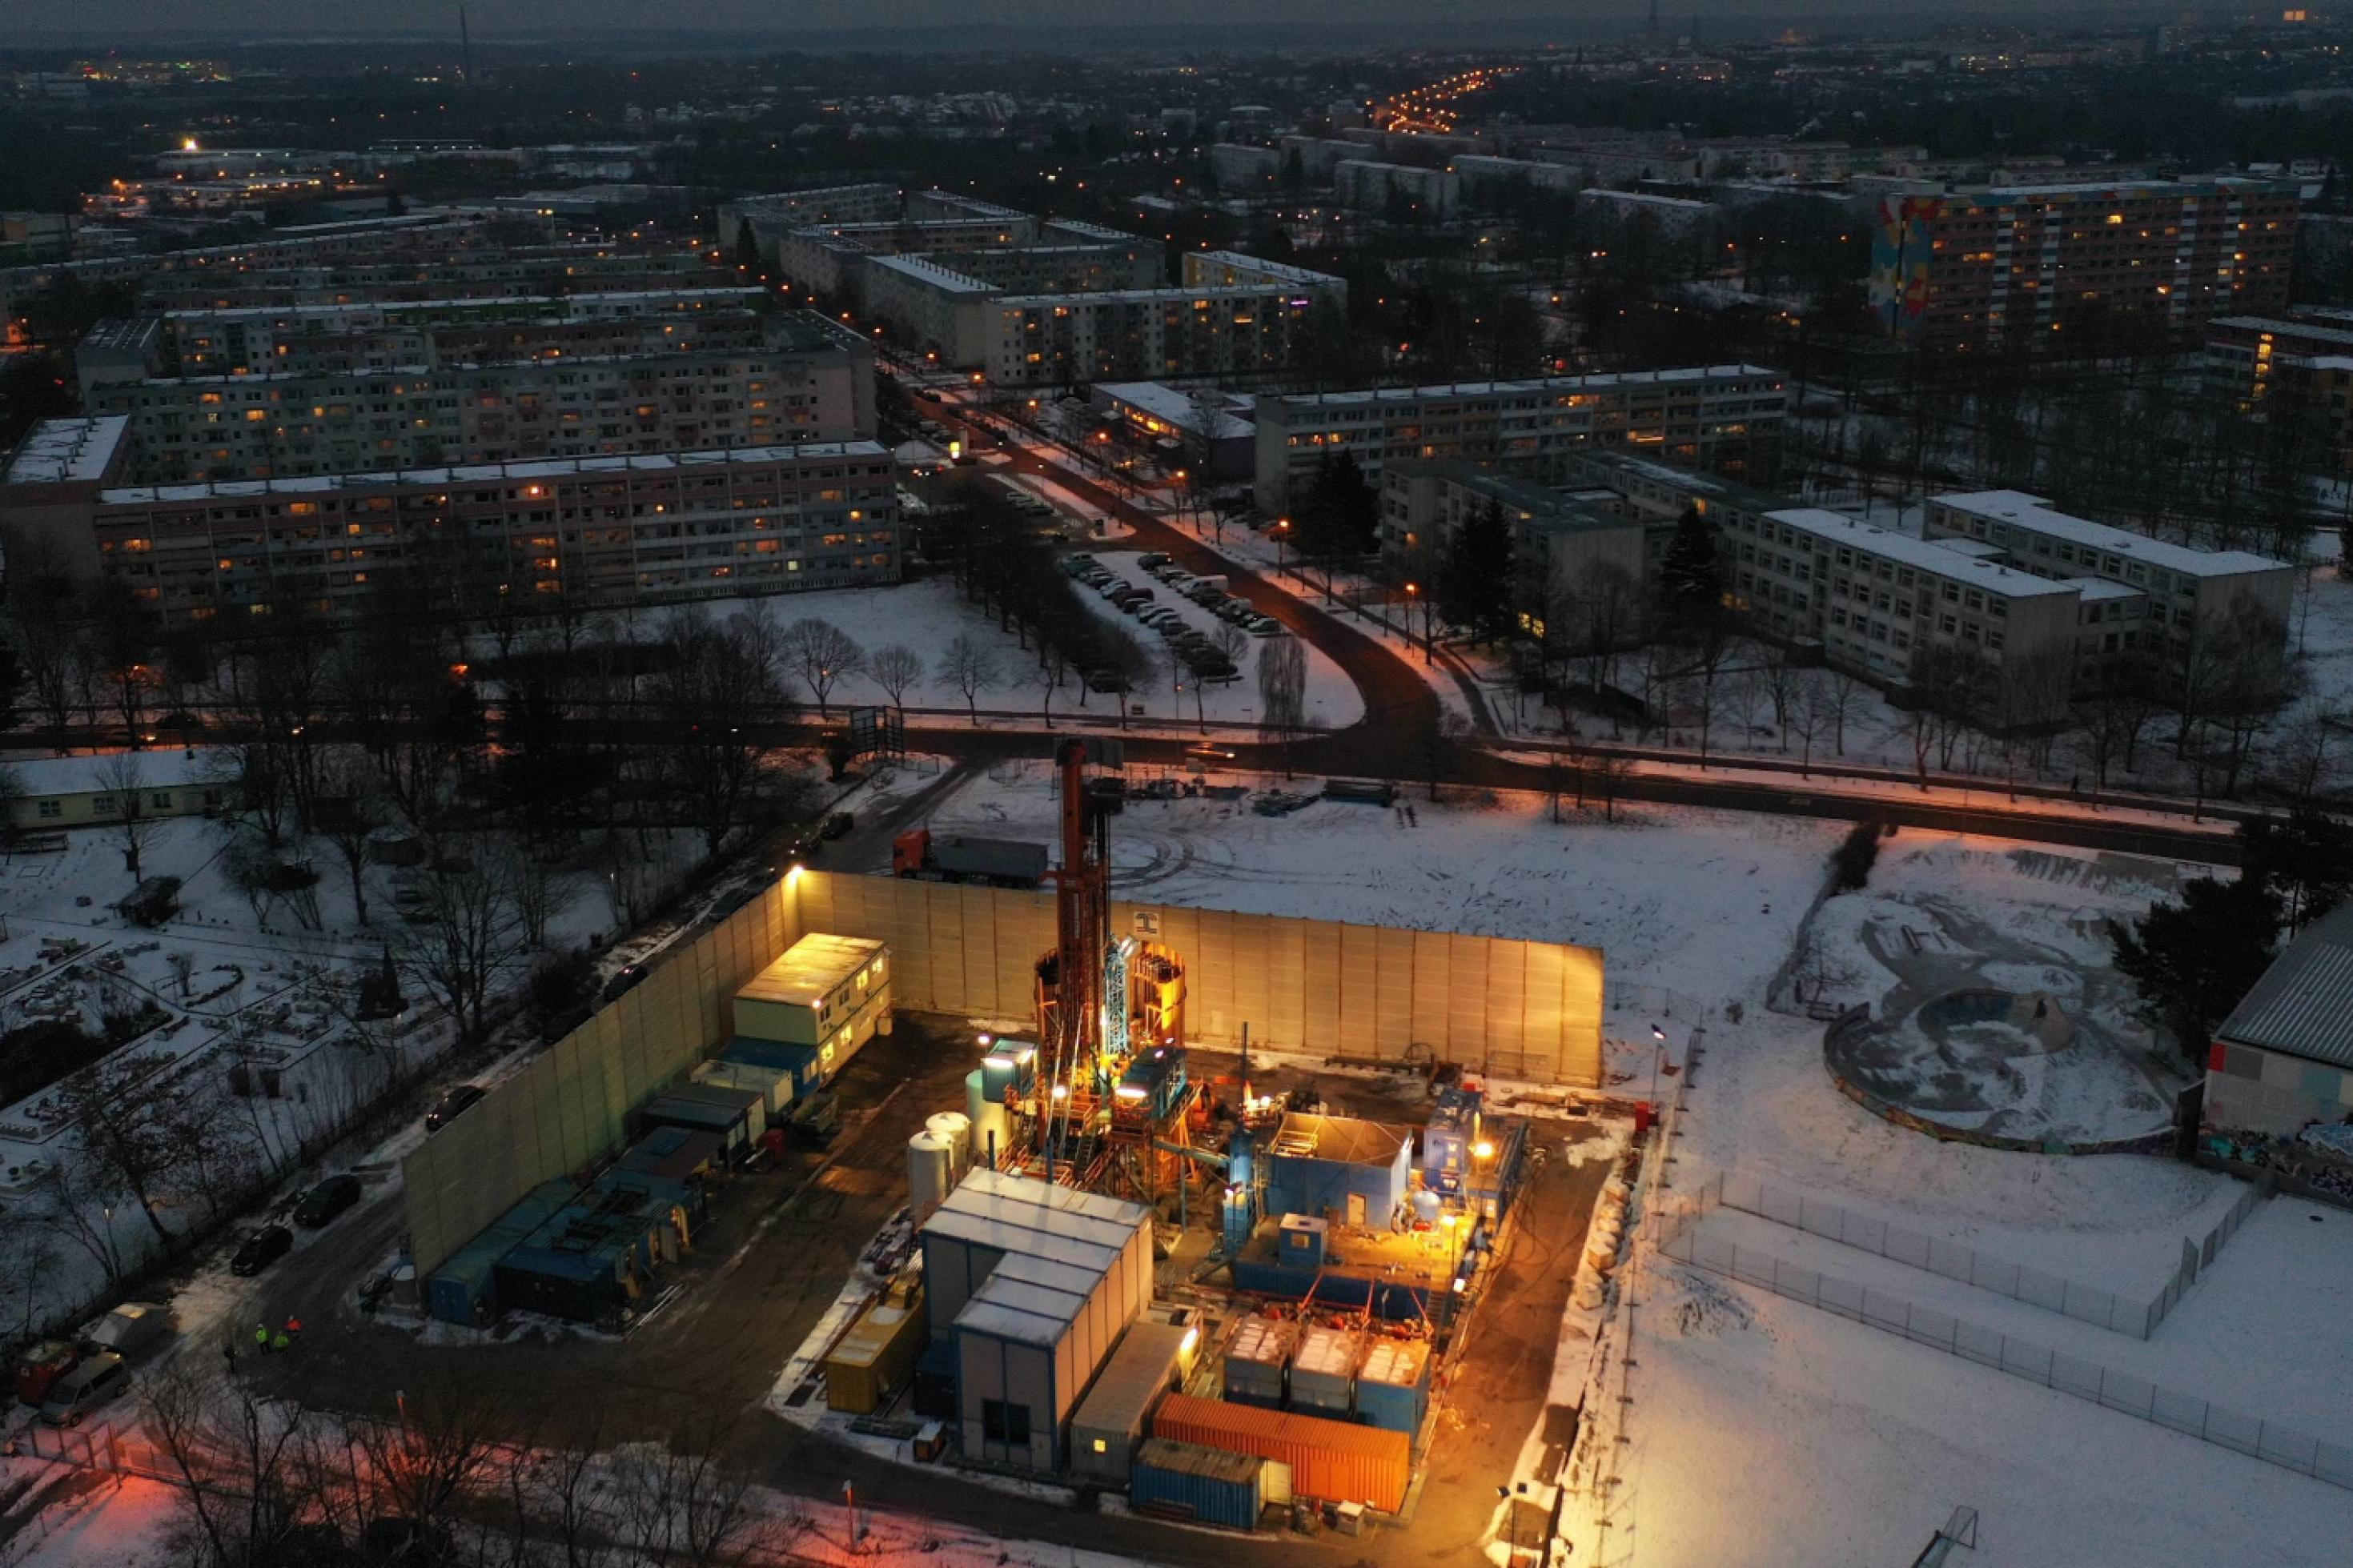 Luftbild einer verschneiten Landschaft im Dämmerlicht, in der Ferne Plattenbauten und Straßen, im Vordergrund ein gut angestrahlter Bohrplatz mit Bohrturm, Baucontainern.